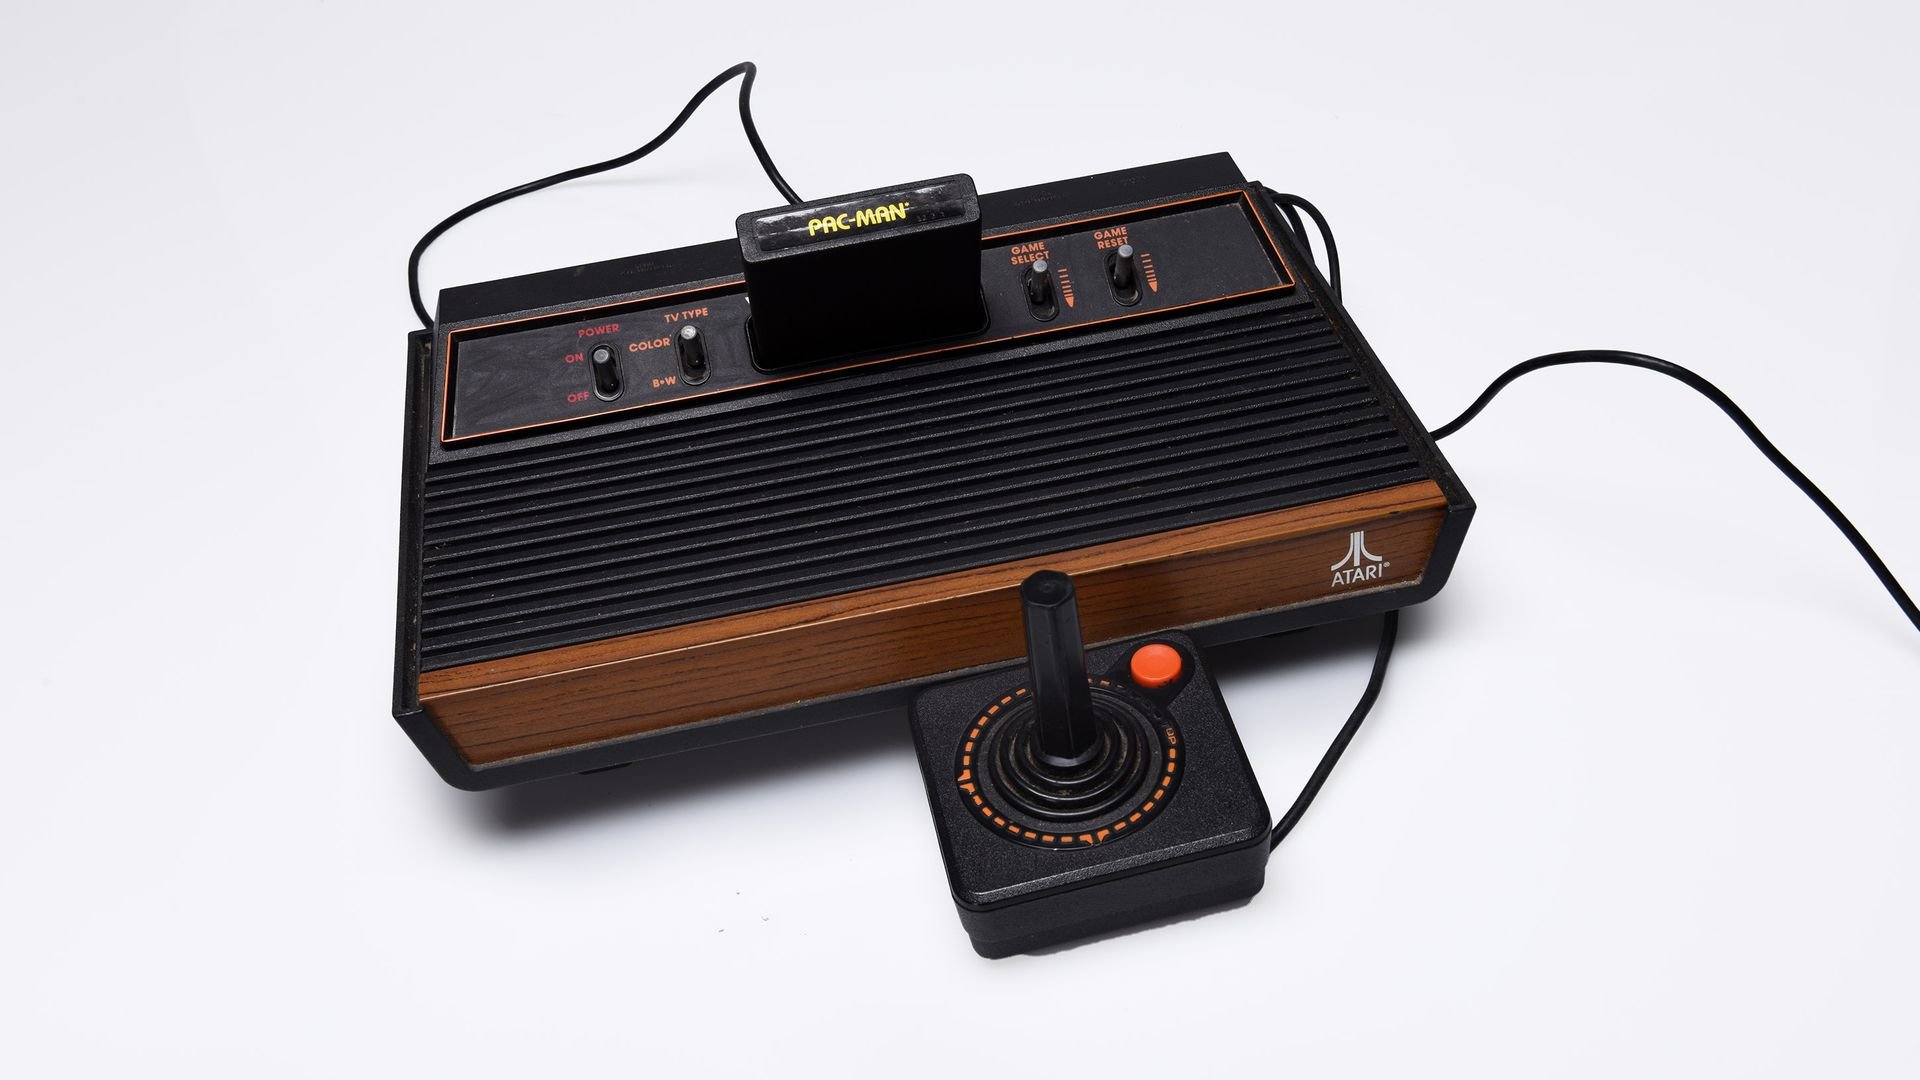 Atari turns 50